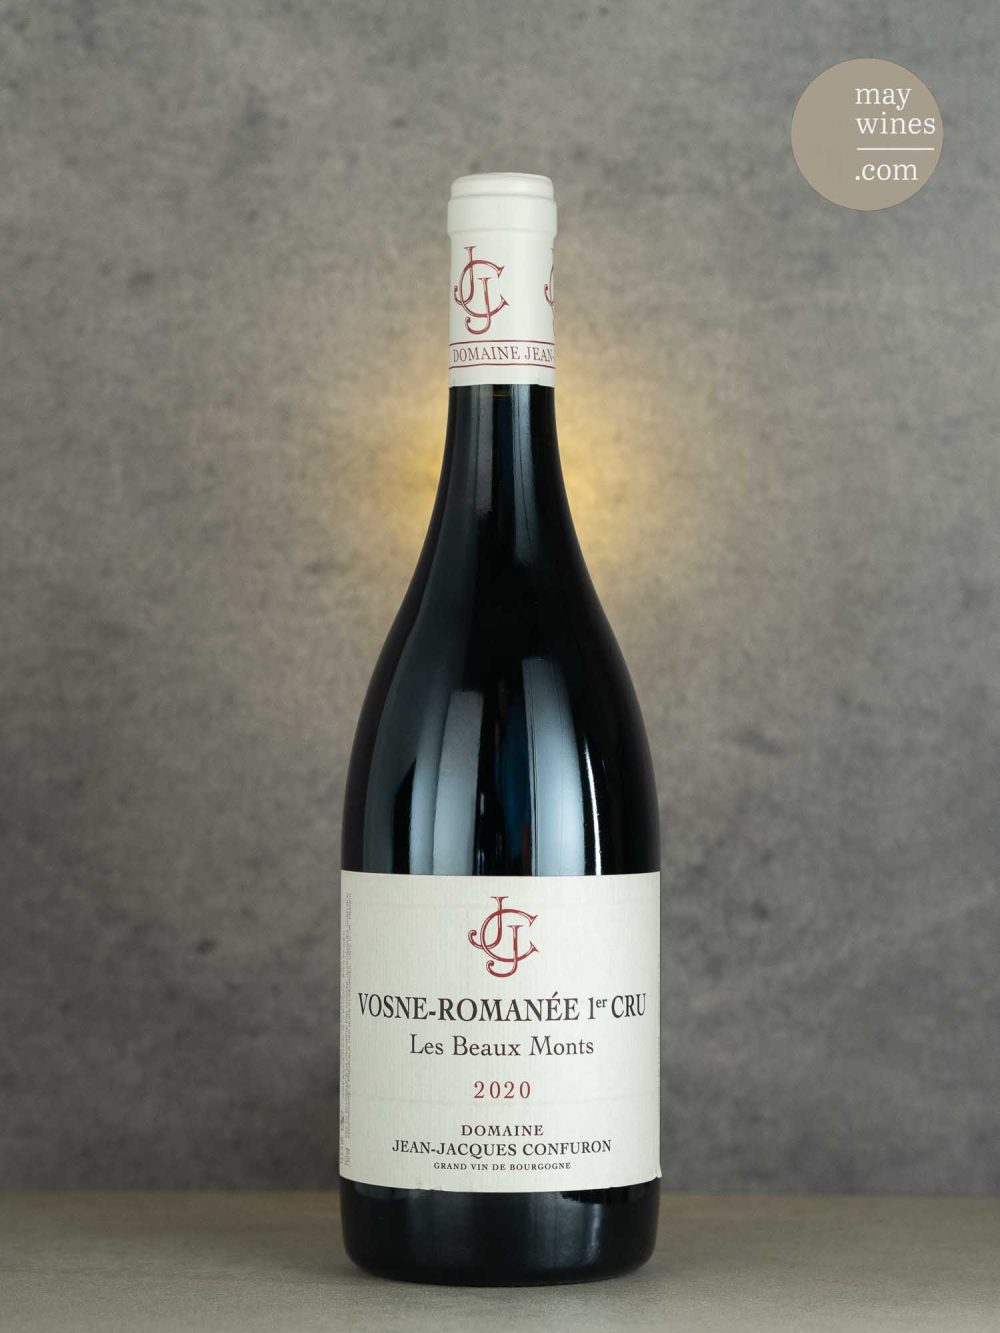 May Wines – Rotwein – 2020 Vosne-Romanée Les Beaux Monts Premier Cru - Domaine Jean Jacques Confuron